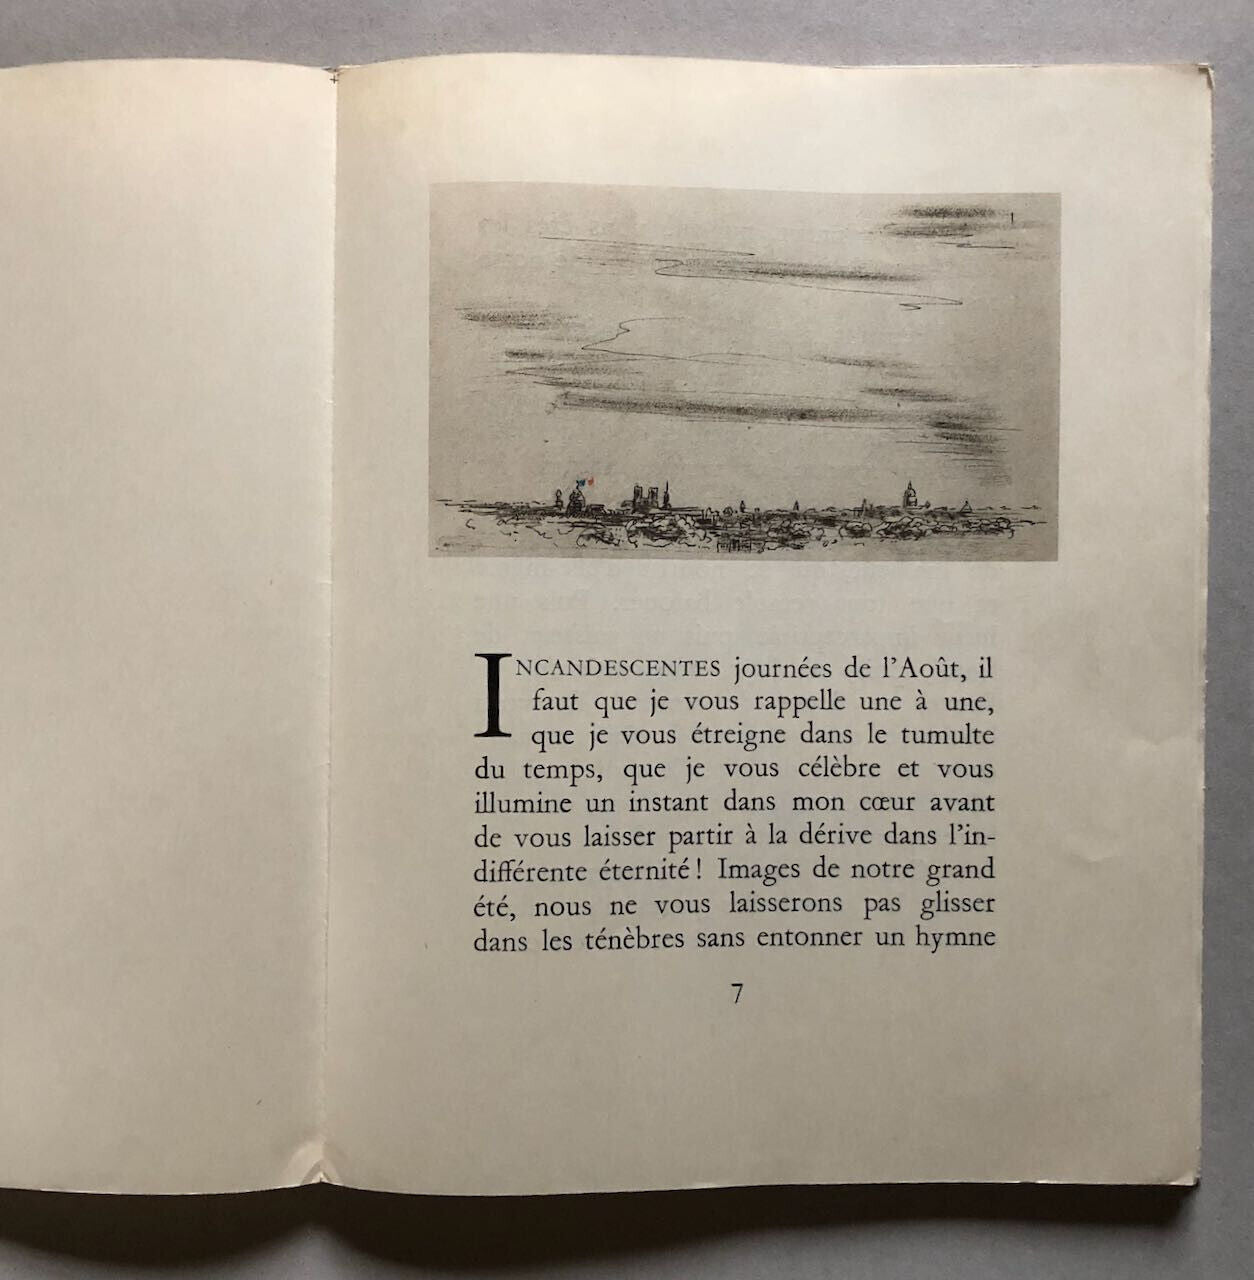 Georges Duhamel — Images de notre délivrance — ill. Claude Lepape — Pavois  1944